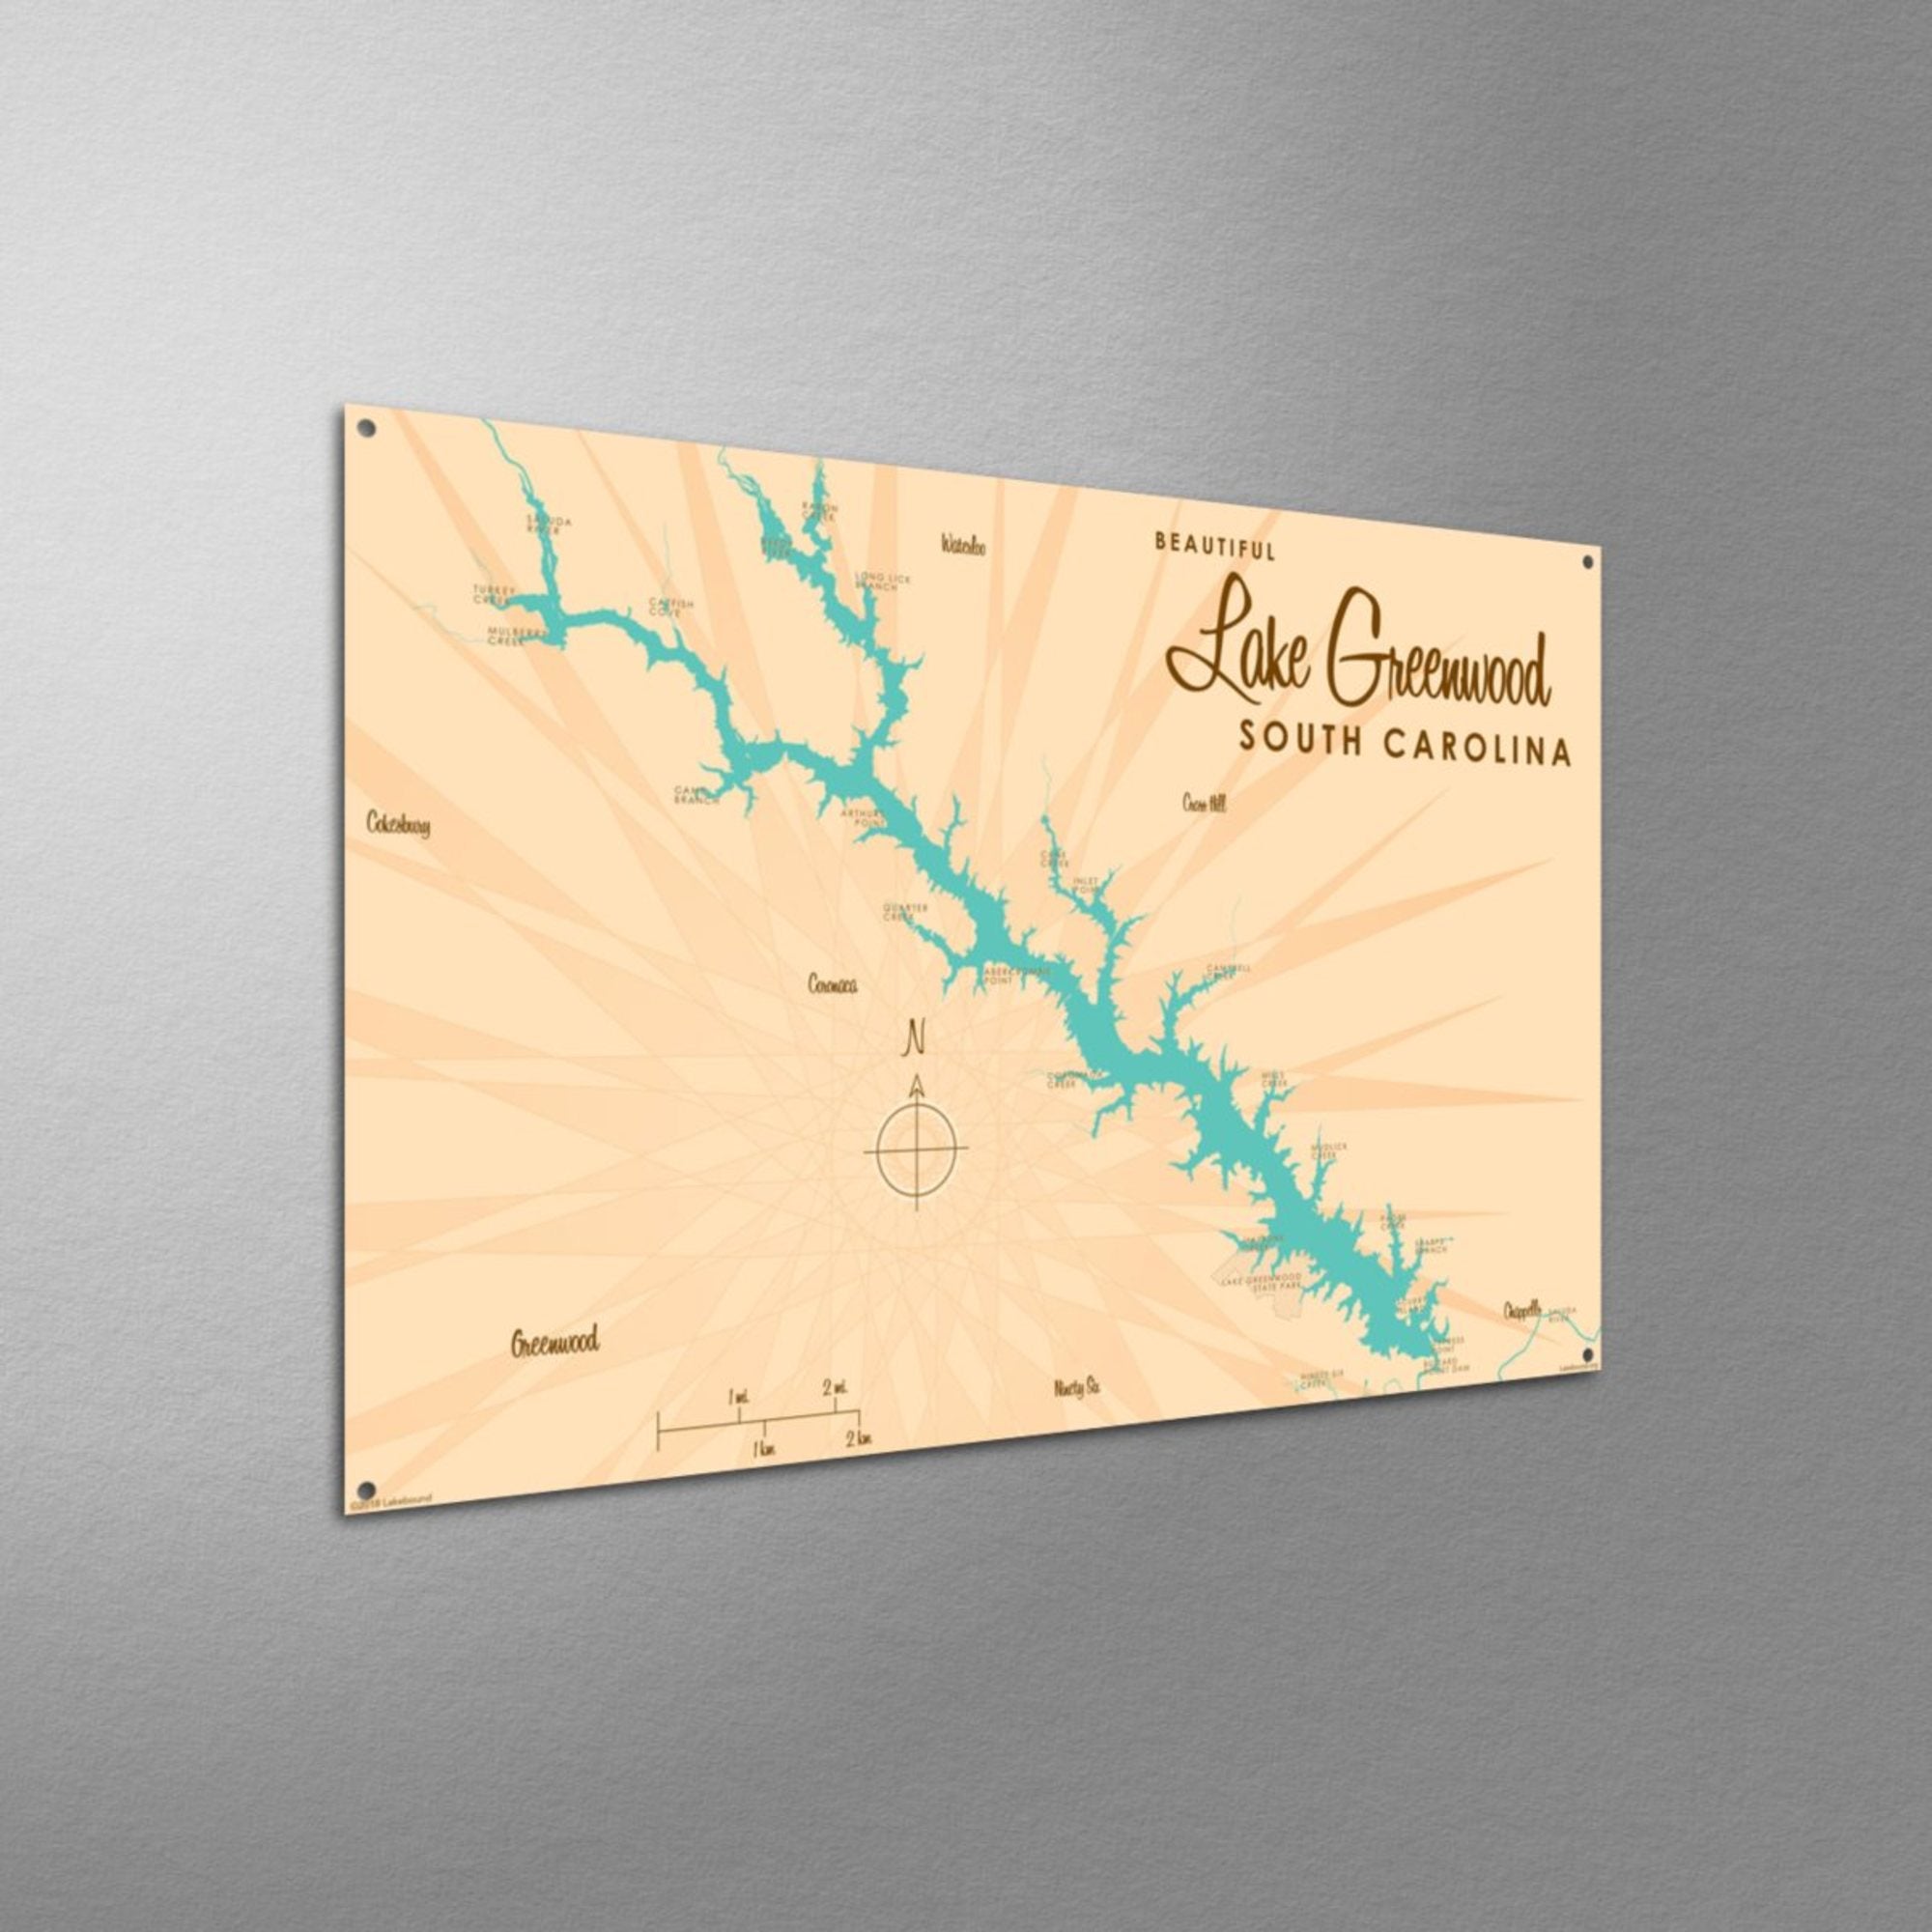 Lake Greenwood South Carolina, Metal Sign Map Art